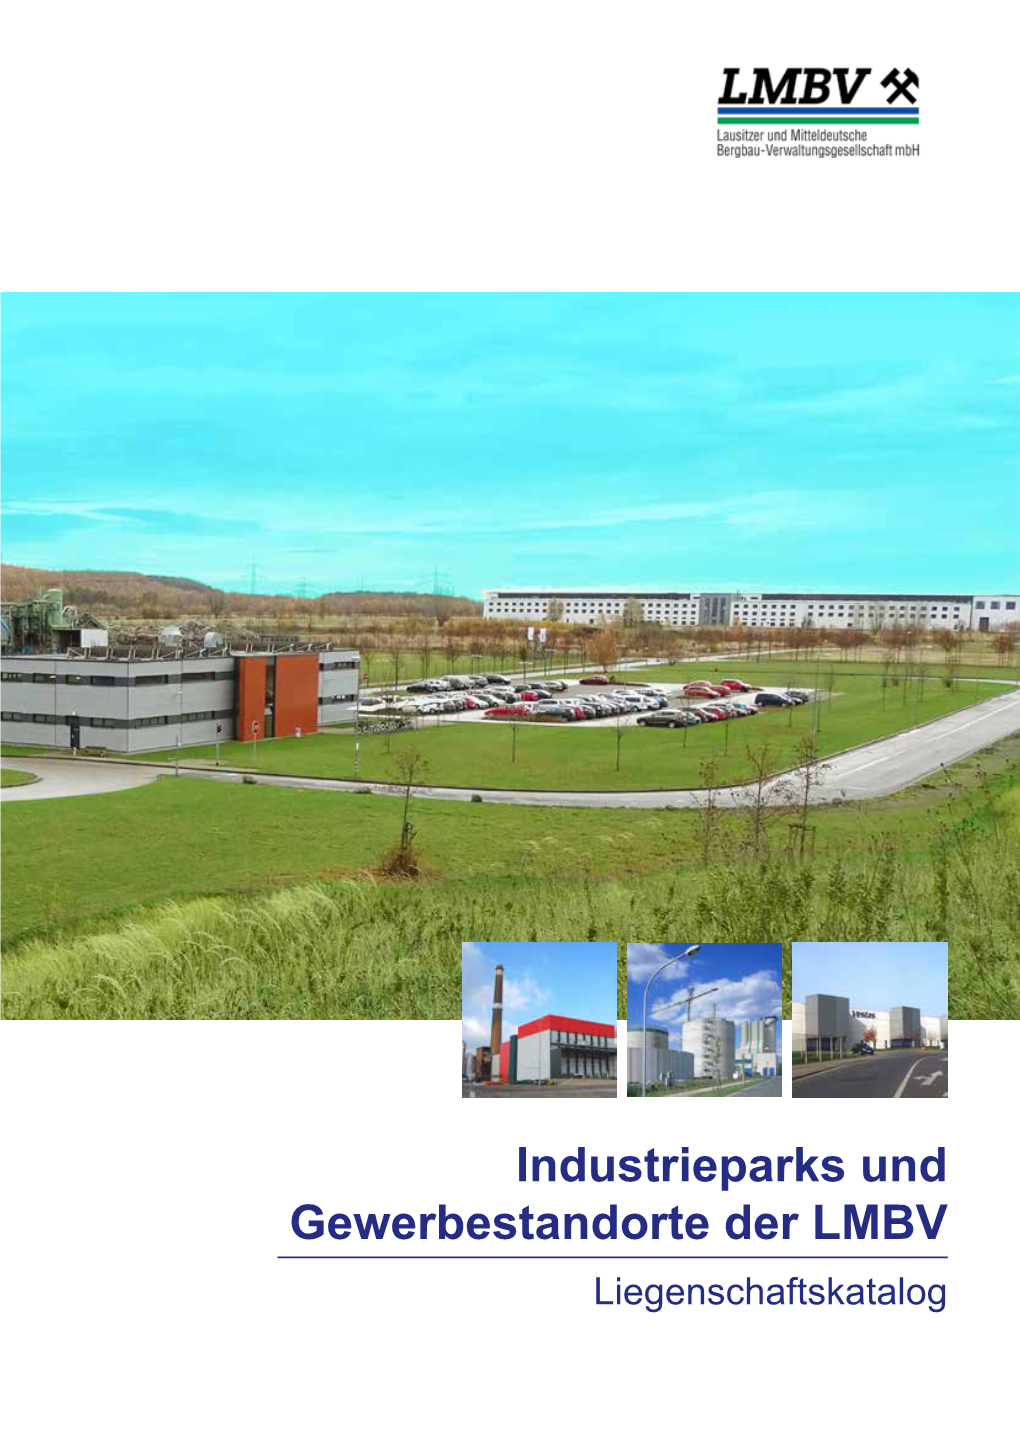 Industrieparks Und Gewerbestandorte Der LMBV Liegenschaftskatalog Industrieparks Der LMBV